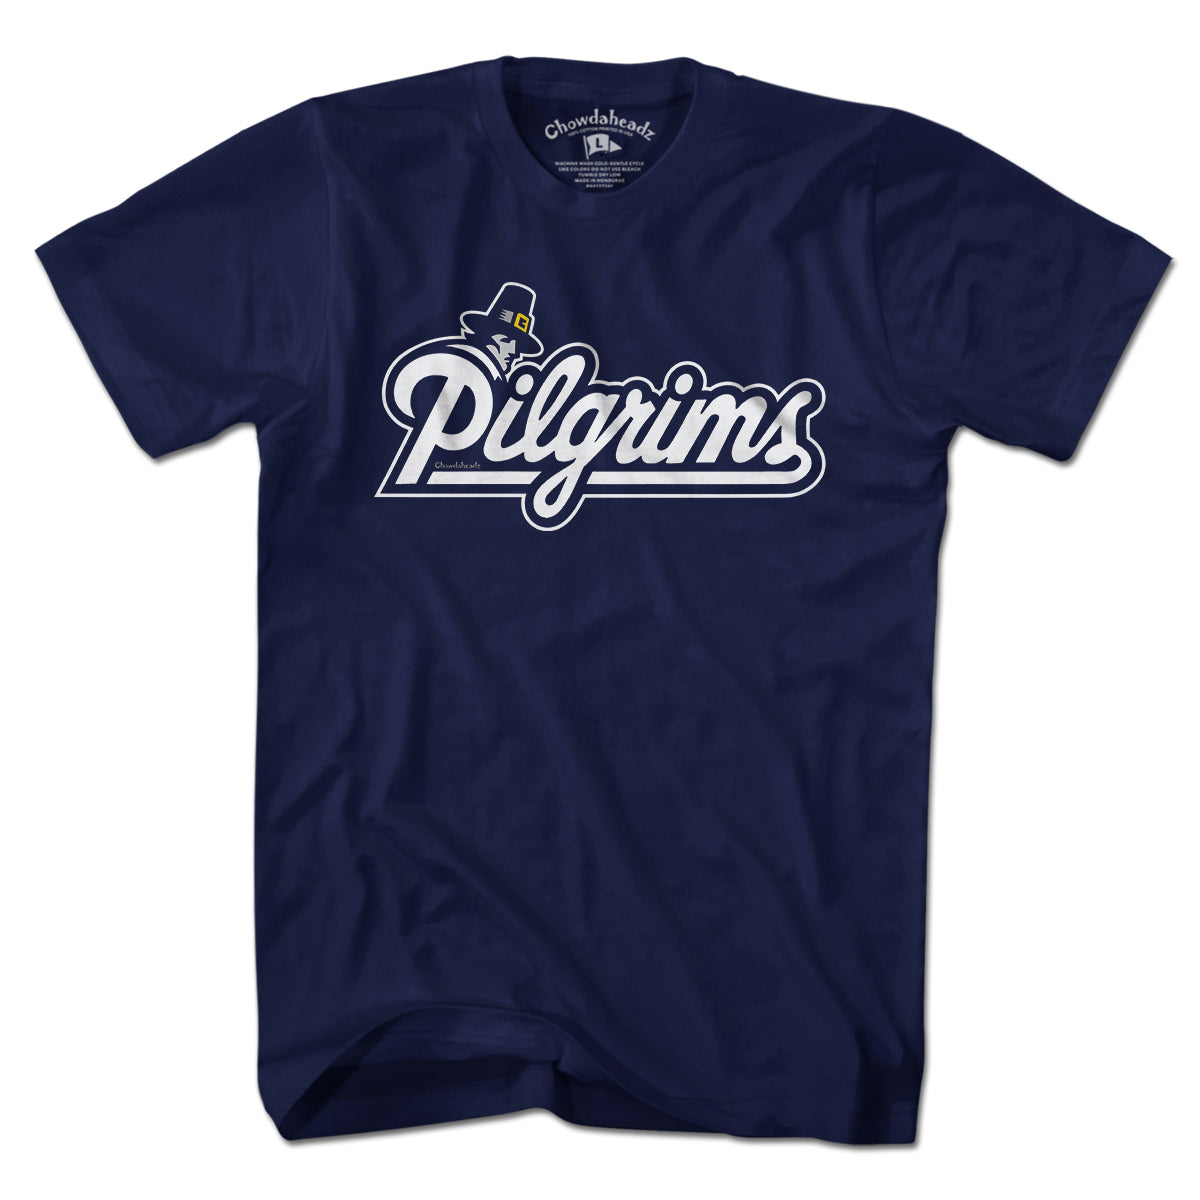 Pilgrims Logo T-Shirt - Chowdaheadz